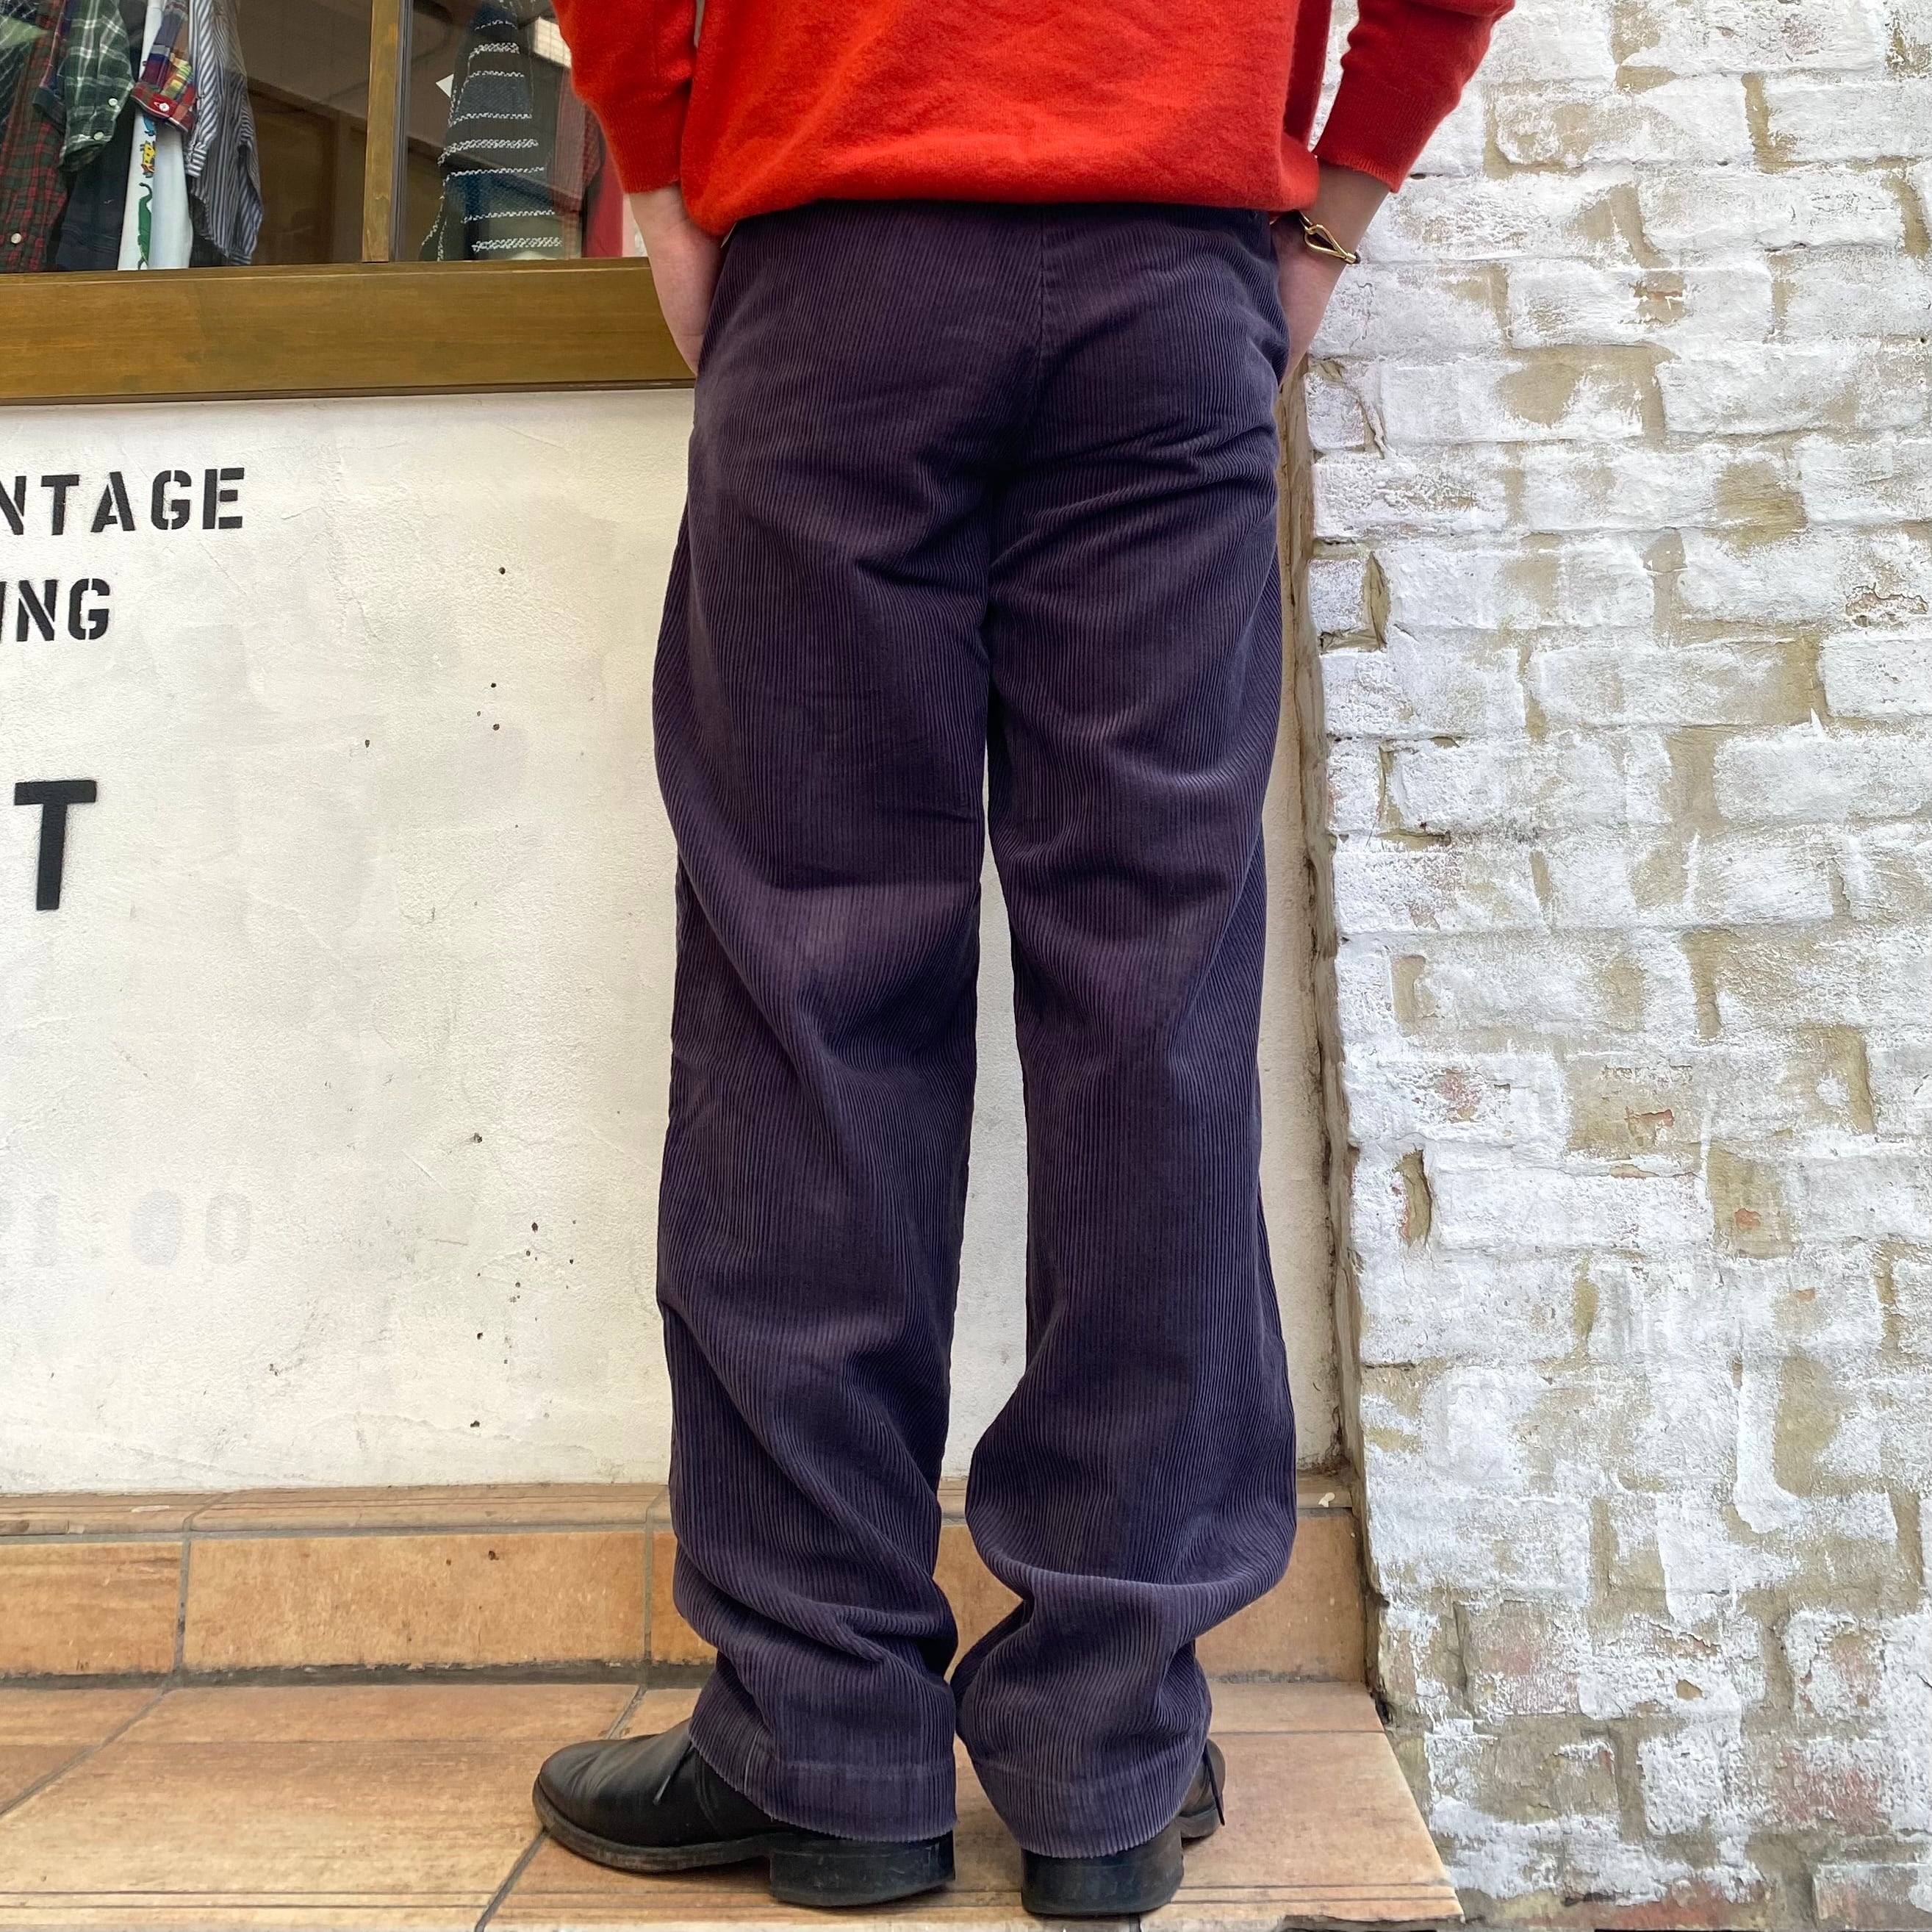 『W34 L32』90年代 Polo Ralph Lauren ANDREW PANT ポロラルフローレン コーデュロイパンツ コーズパンツ  アンドリューパンツ 2タック 太畝 紫 古着 古着屋 高円寺 ビンテージ